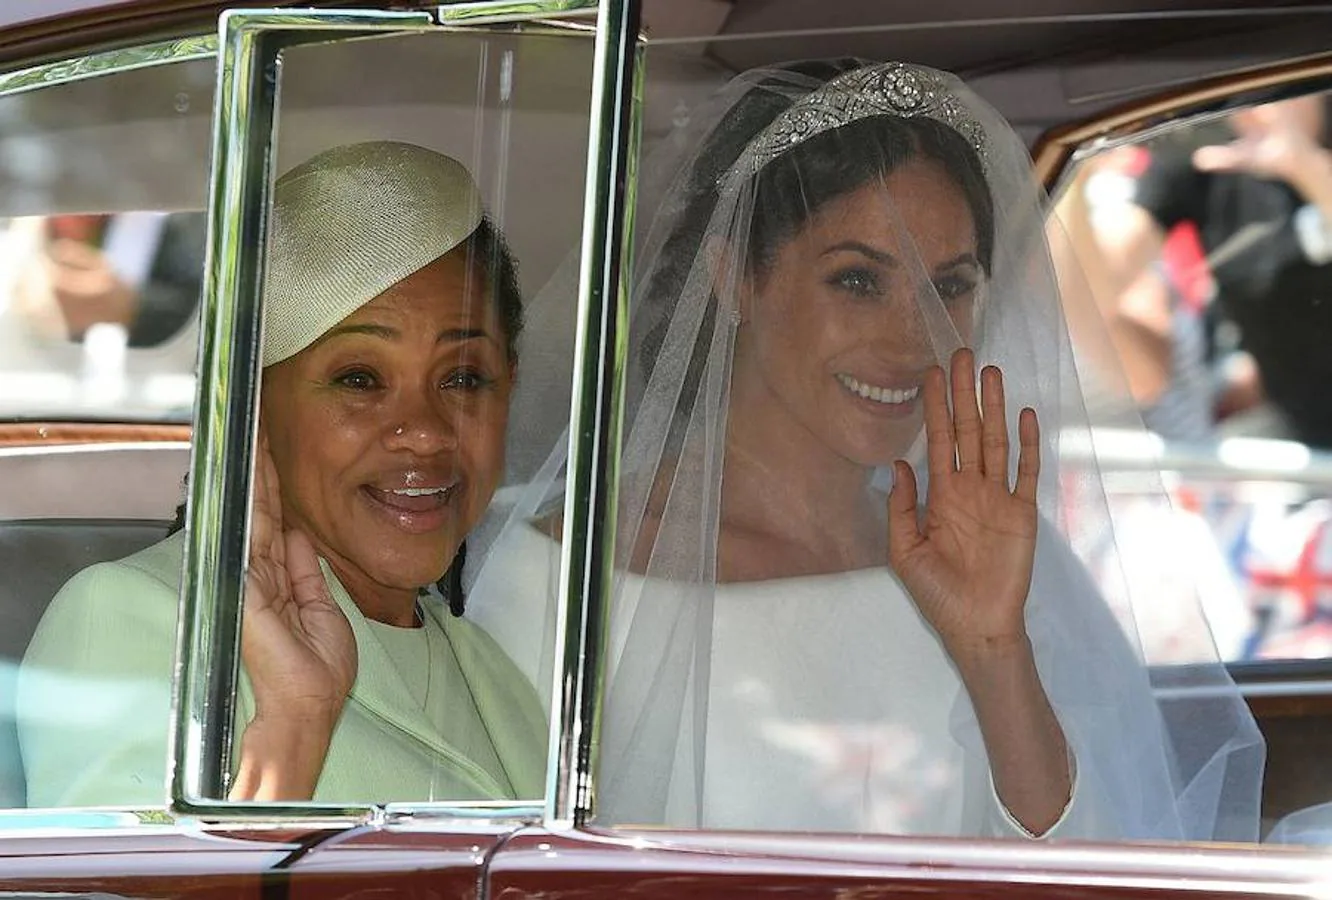 Las mejores imágenes de la boda de Meghan Markle y el Príncipe Harry